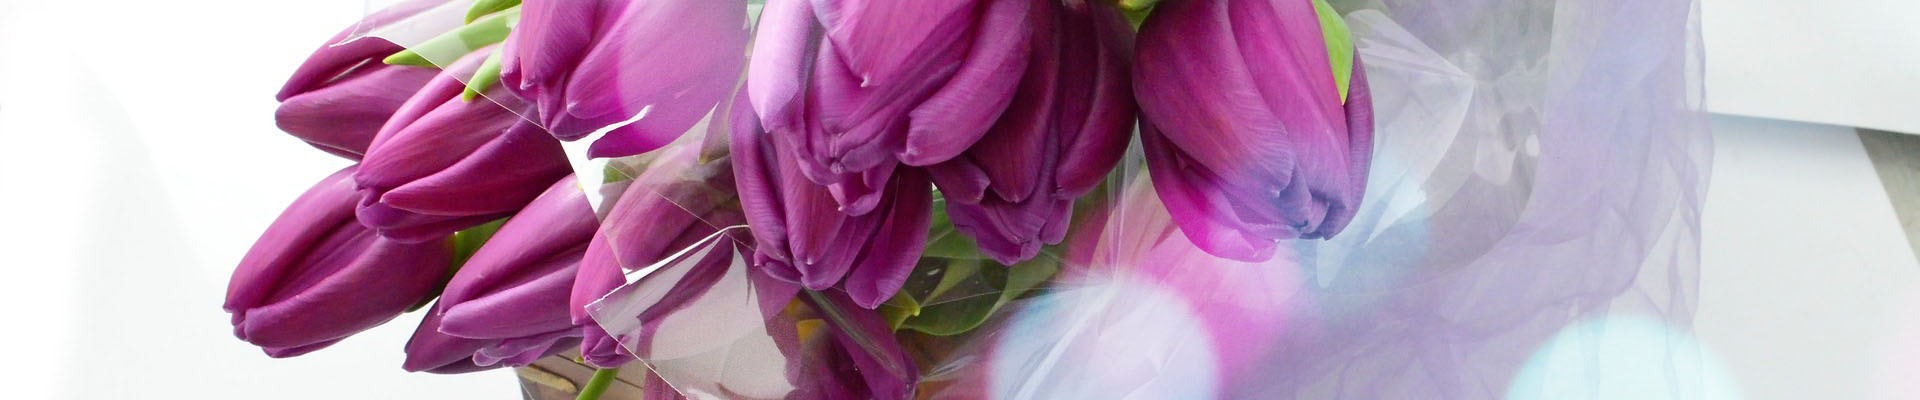 bos paarse tulpen